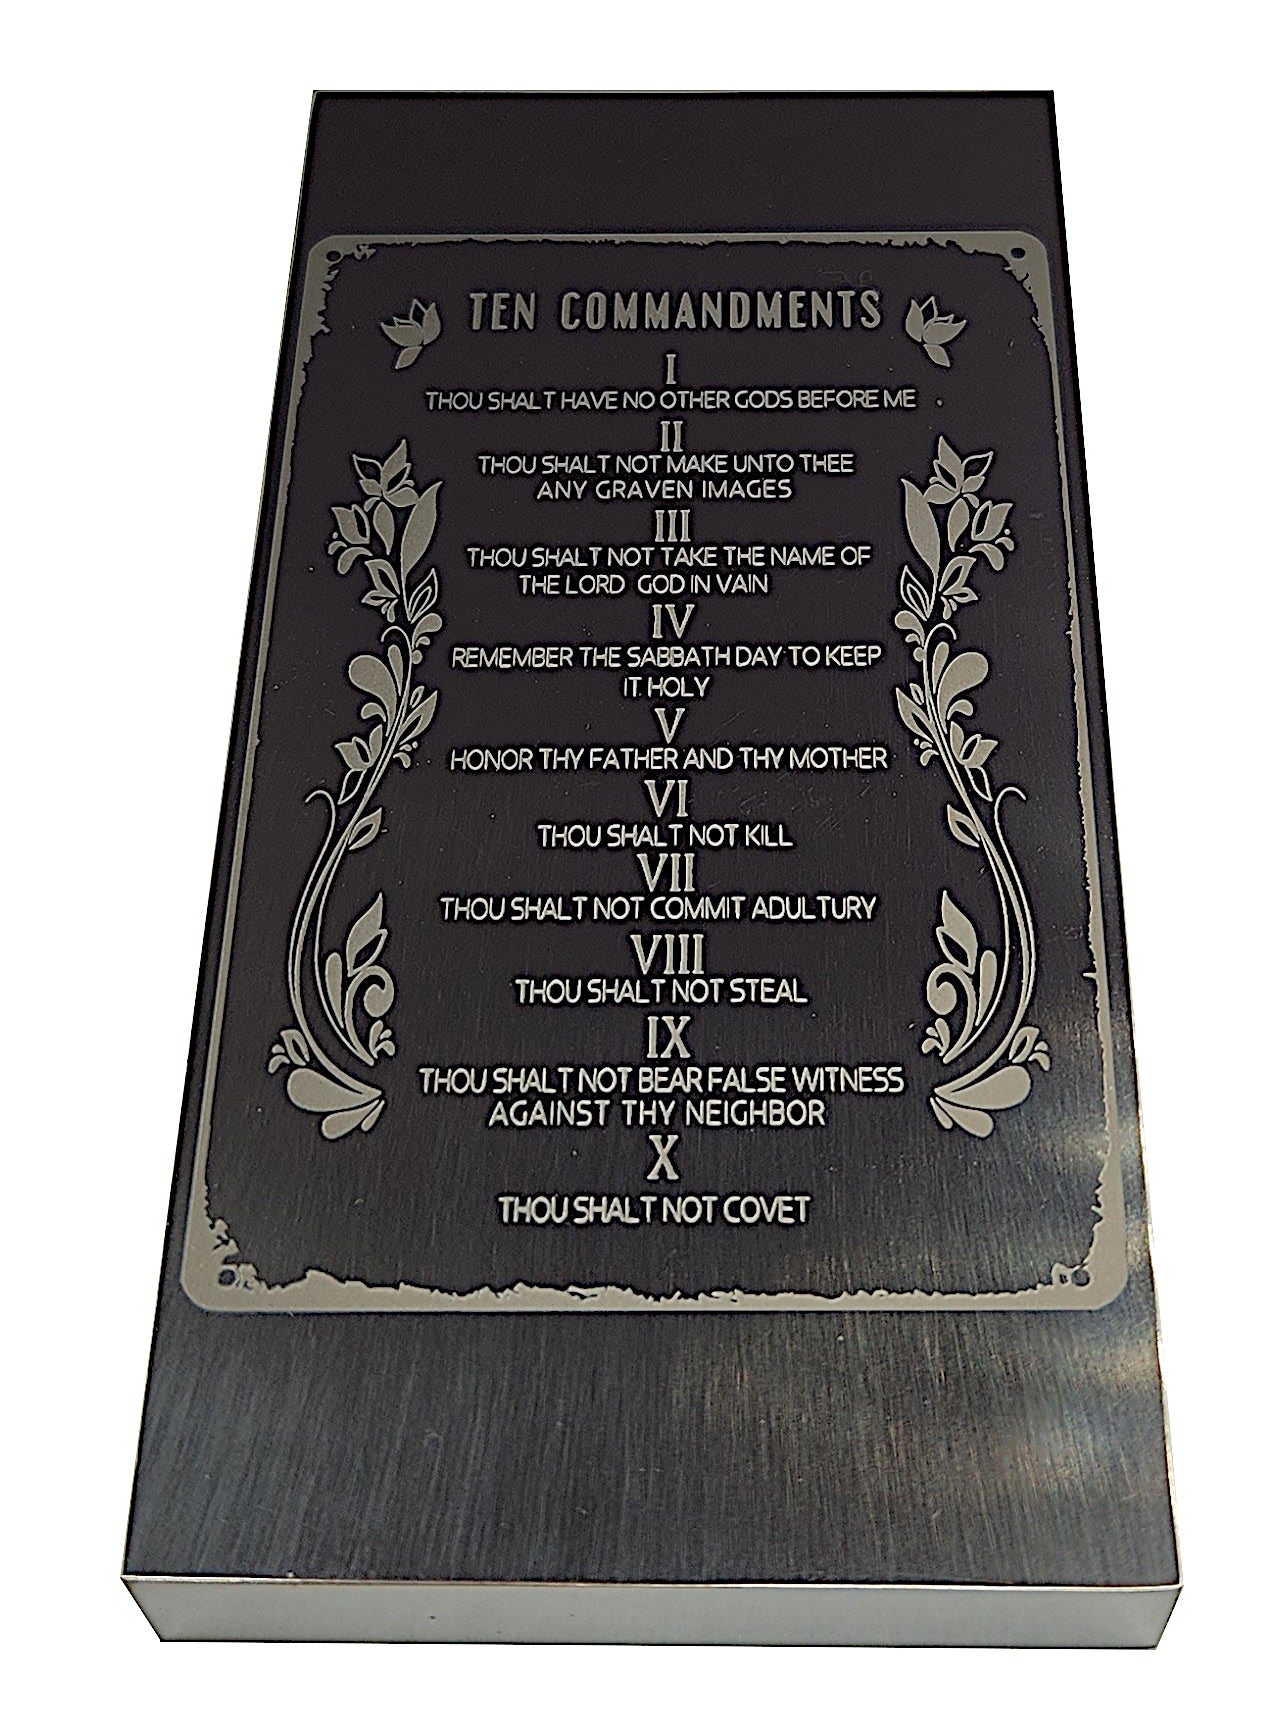 The Ten Commandments 1 lb titanium bar by Liberty Copper